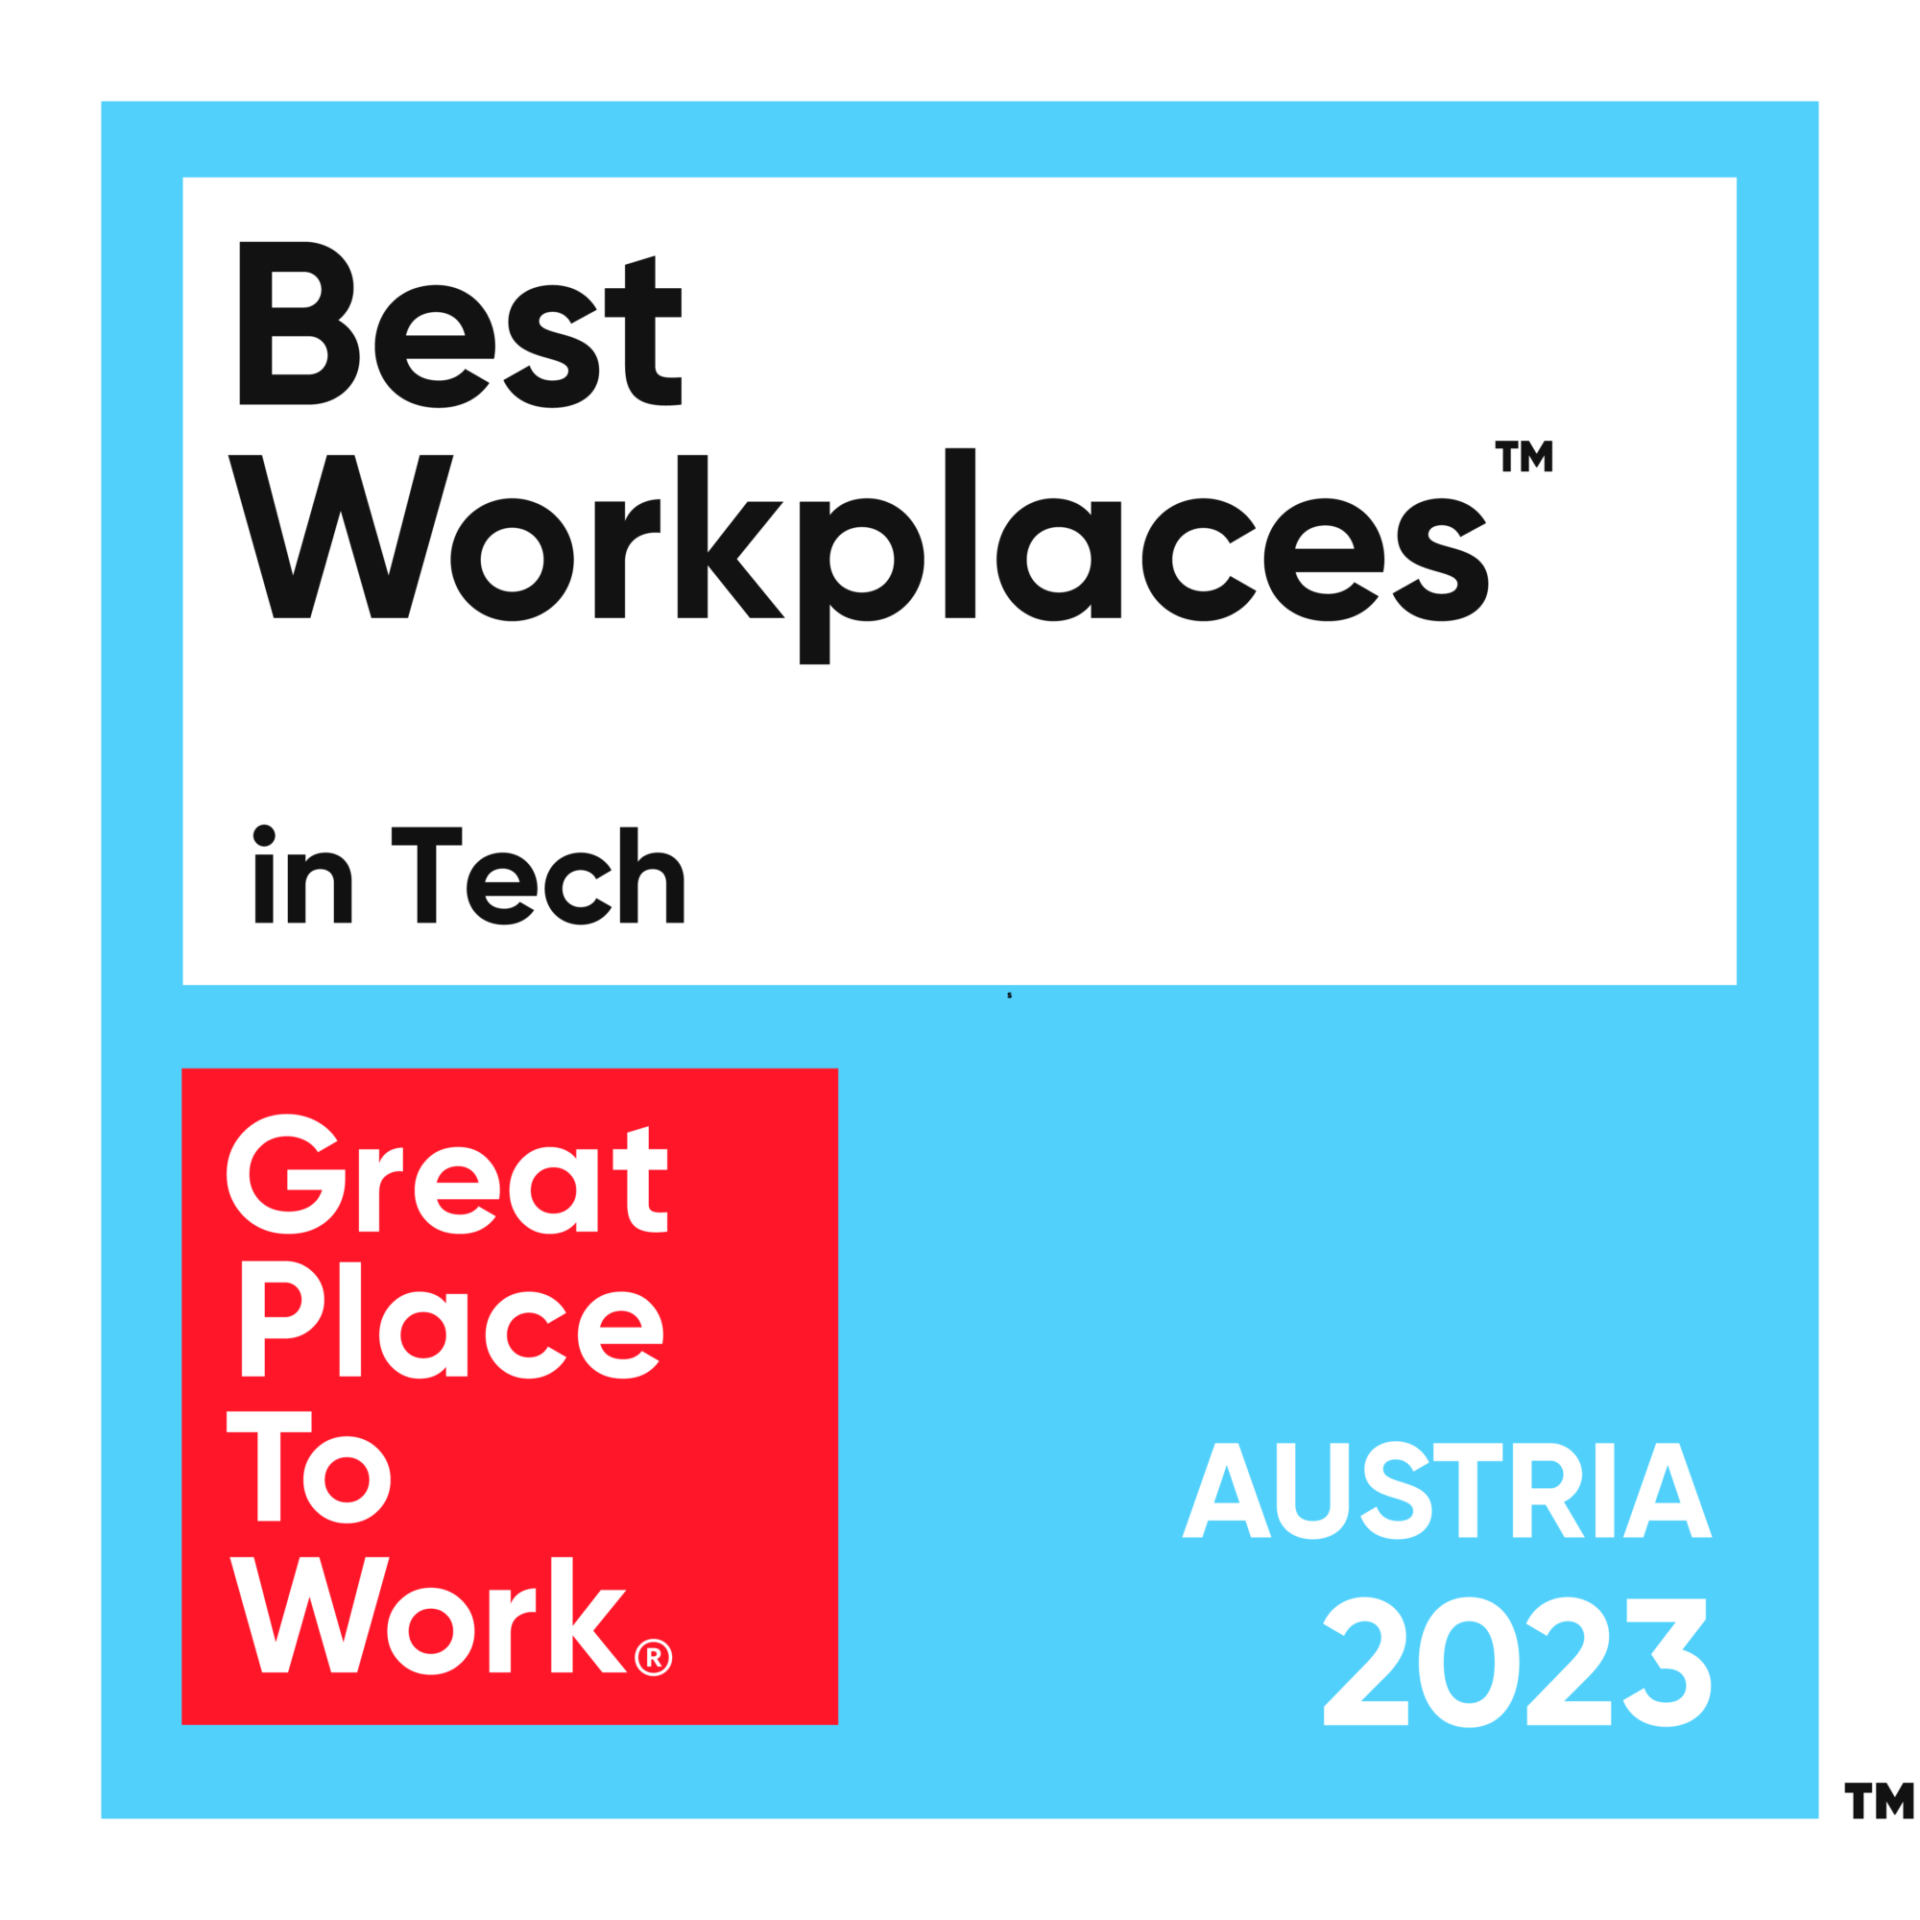 Mejor lugar para trabajar en tecnología en 2023 - Austria